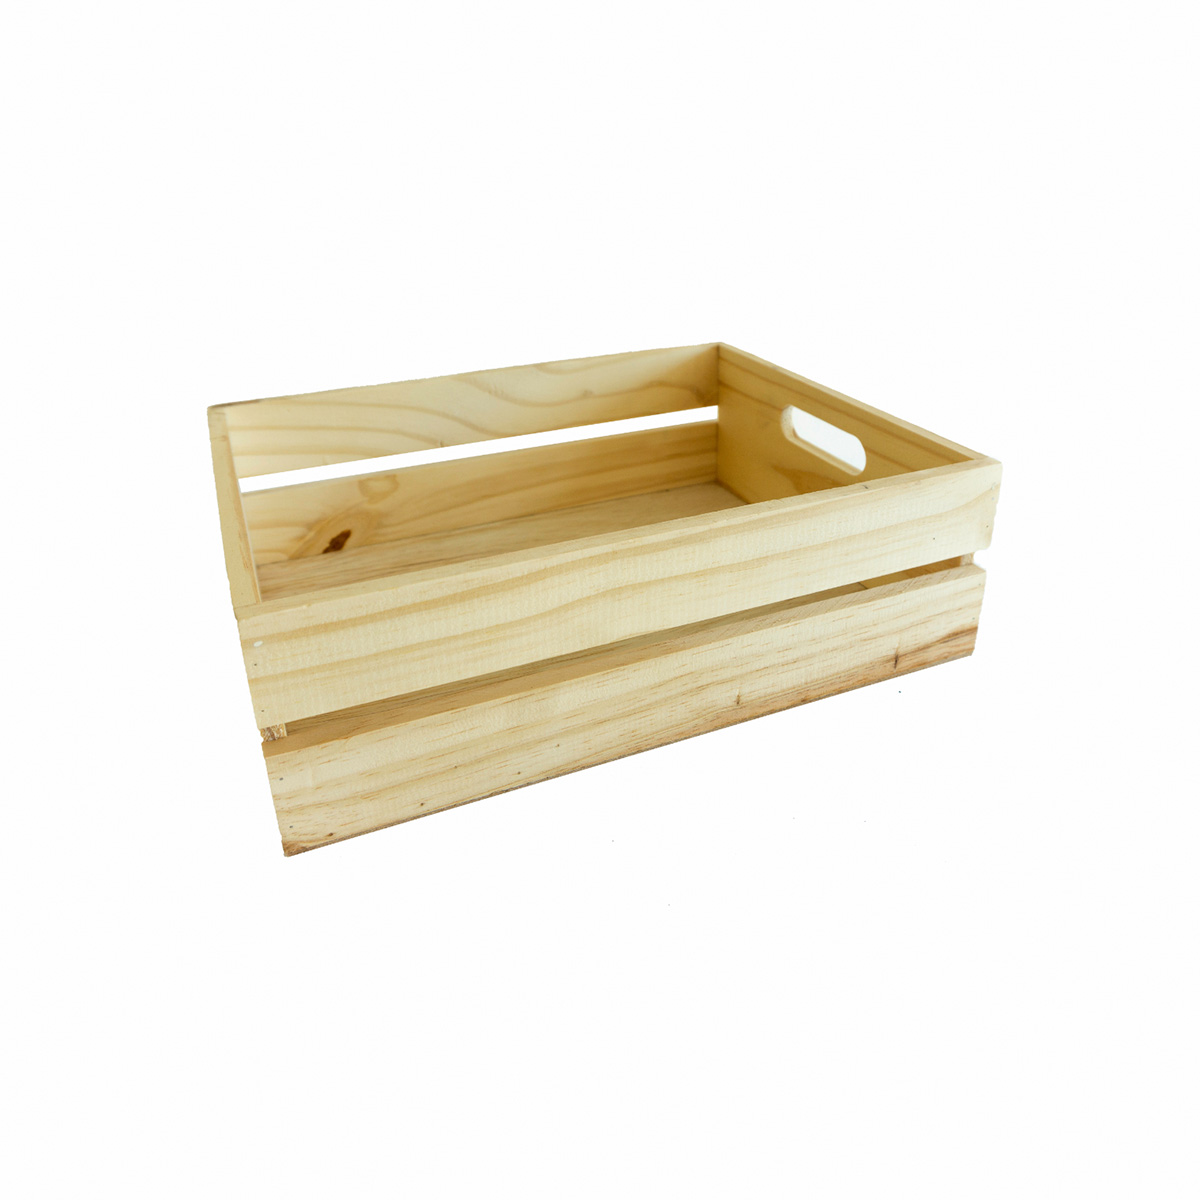  Natural Timber Crate 